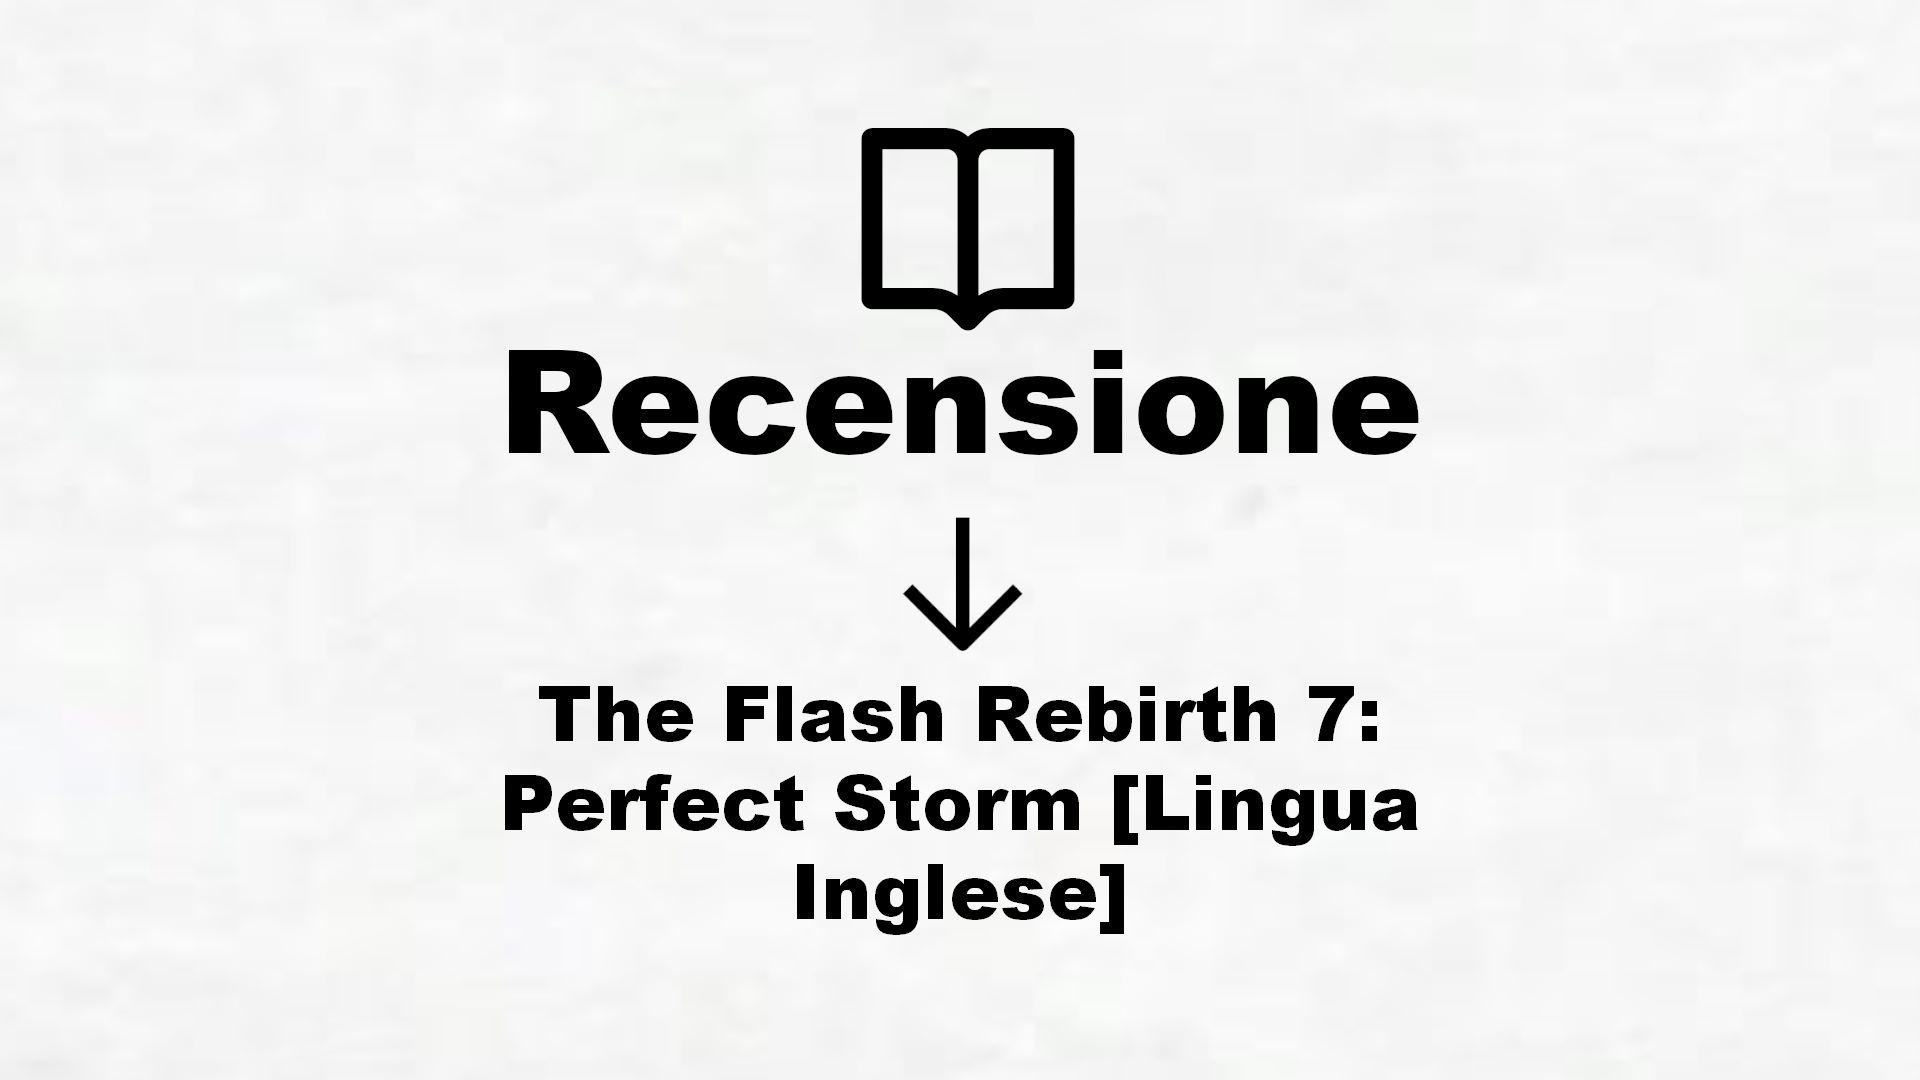 The Flash Rebirth 7: Perfect Storm [Lingua Inglese] – Recensione Libro